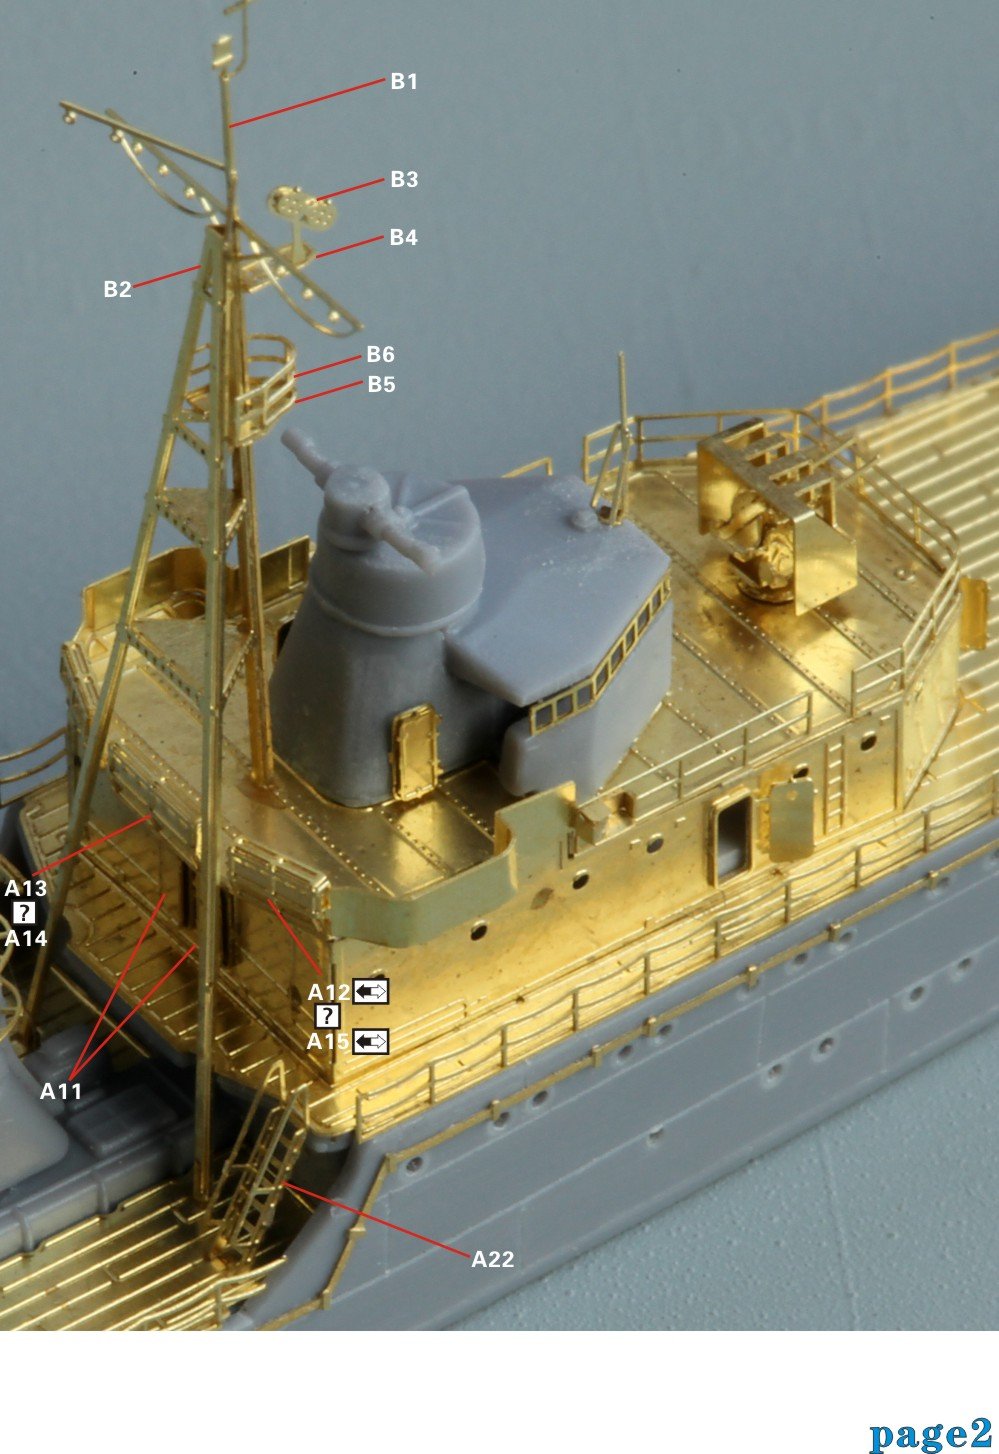 1/700 二战日本海军宇治号炮舰1945年升级改造套件(配青岛社00369)